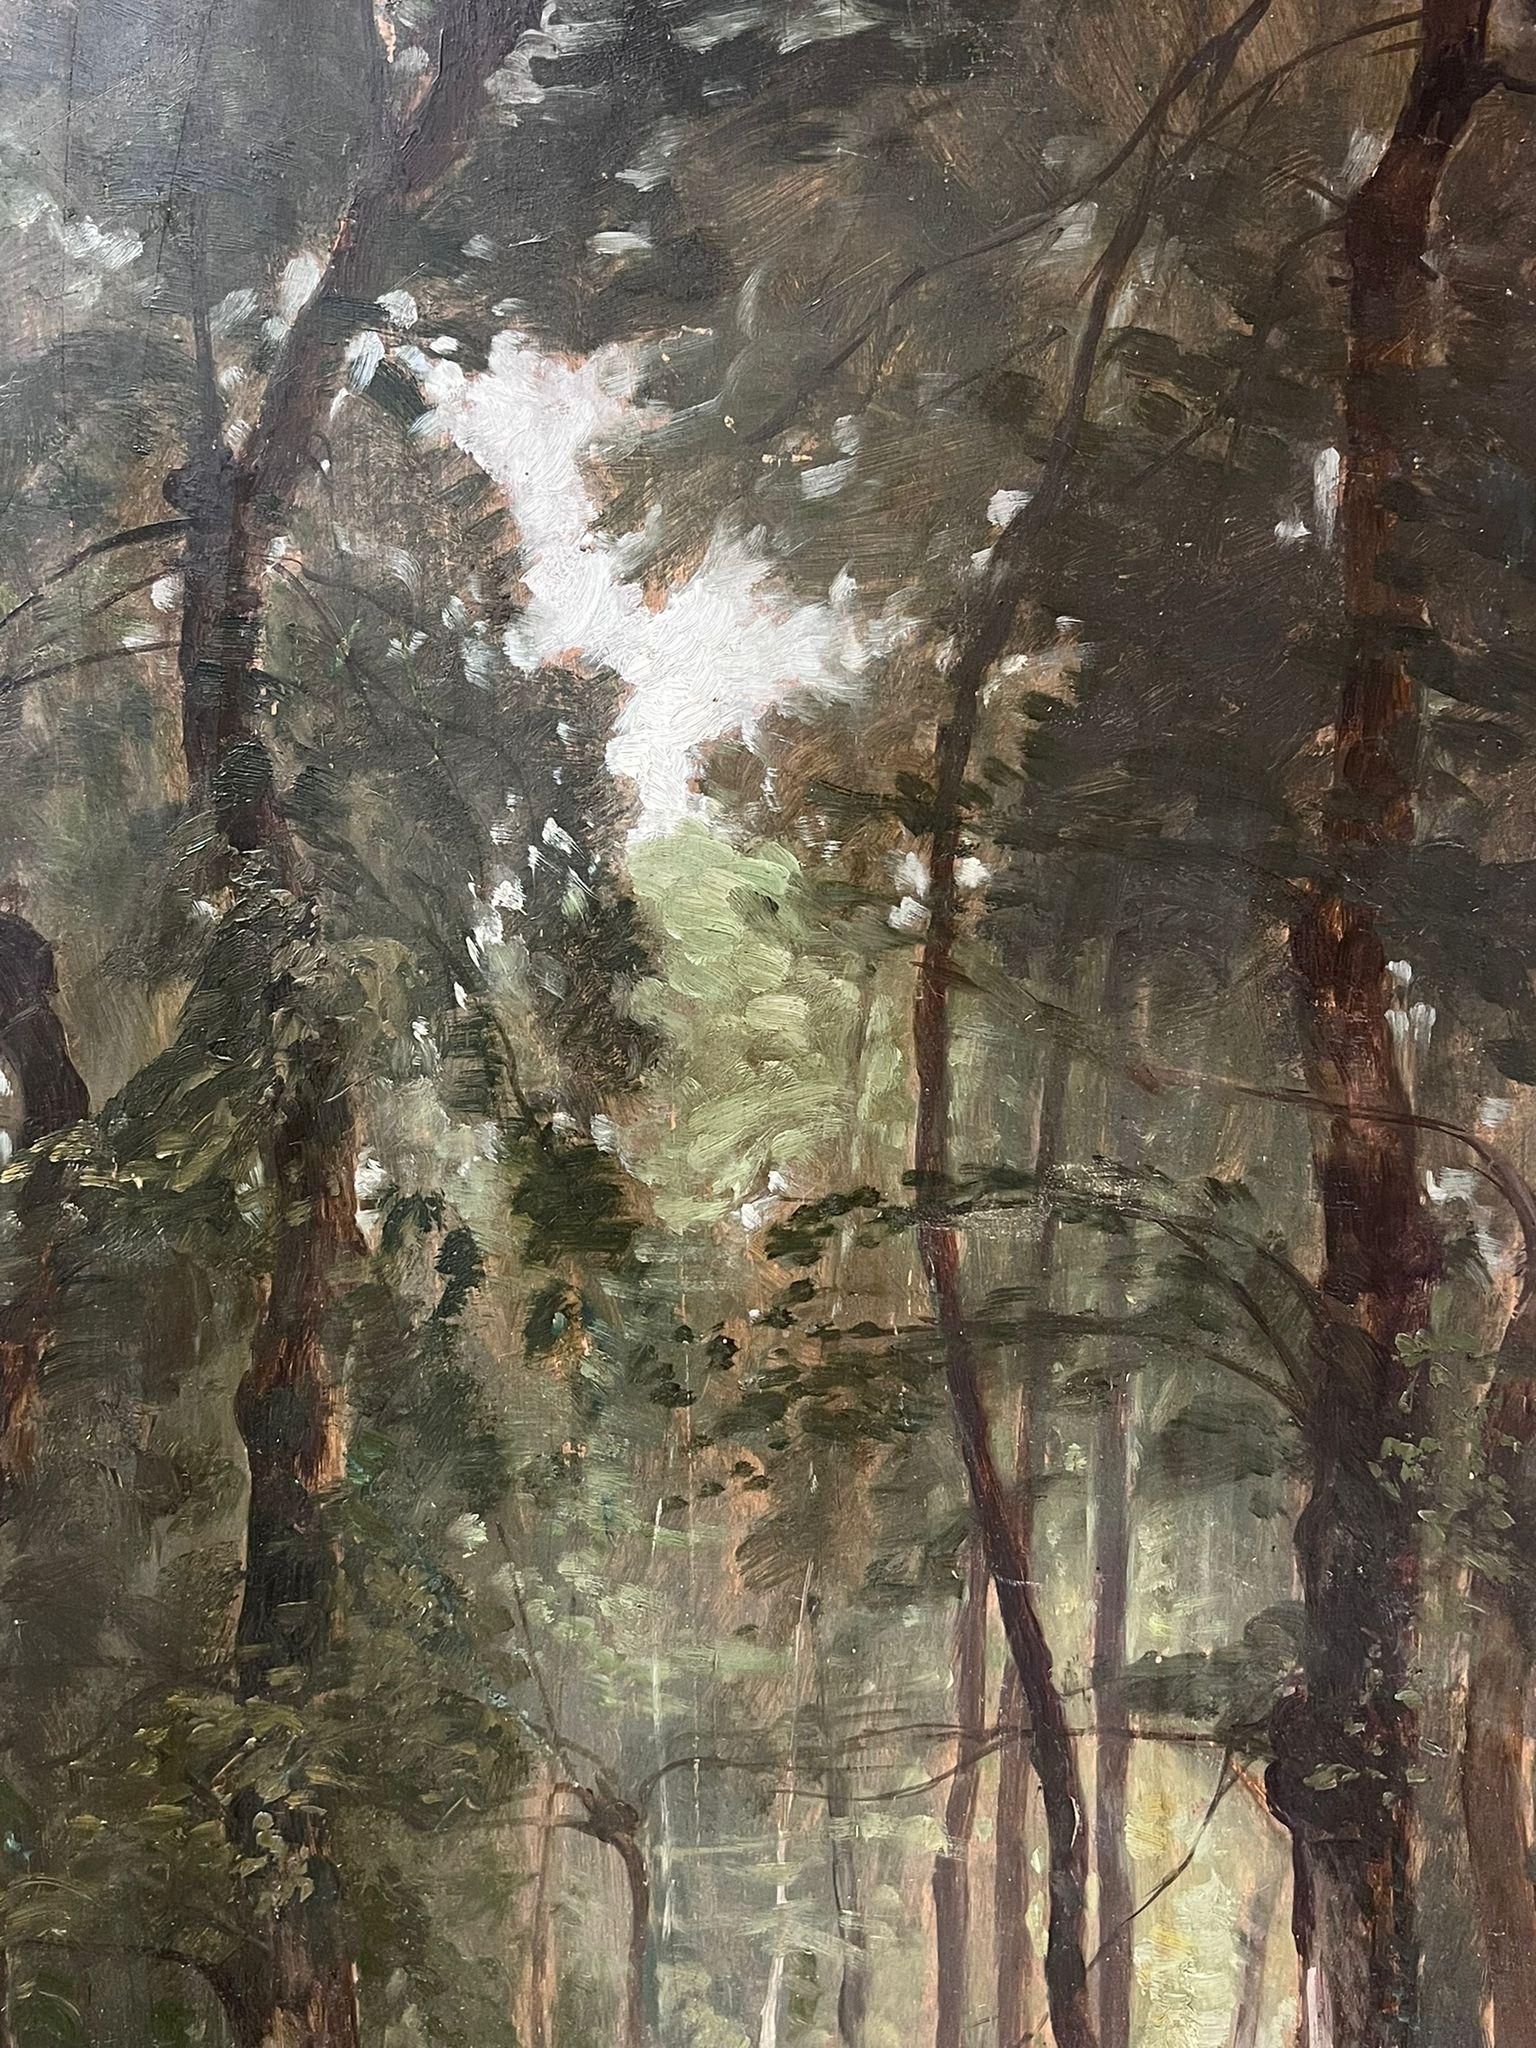 La forêt de Barbizon
cercle de Jean-Baptiste Camille Corot (français, 19e siècle)
porte la signature,
huile sur panneau de bois (berceau), non encadrée
panneau : 30 x 19 pouces
provenance : collection privée, France
état : très bon et sain 